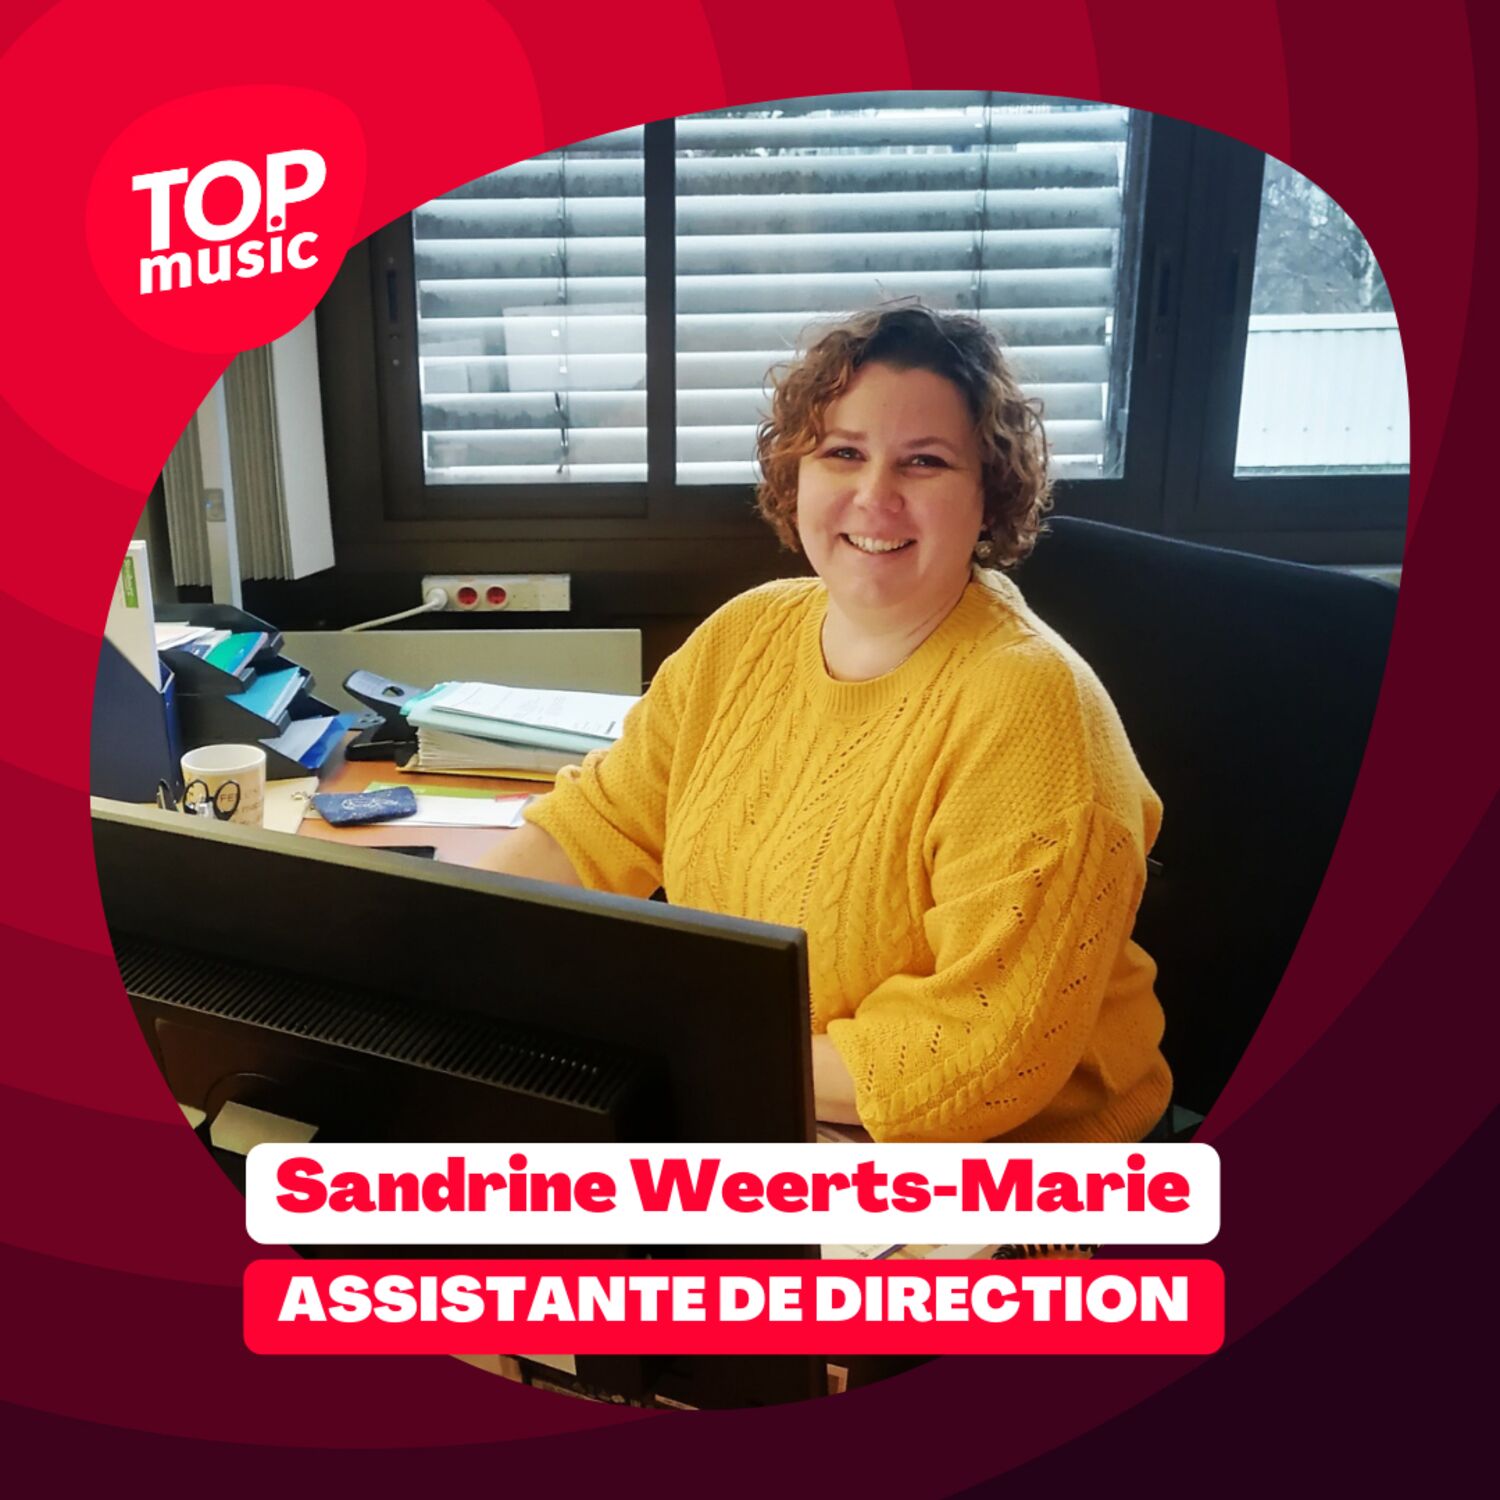 Sandrine Weerts-Marie, Assistante de direction